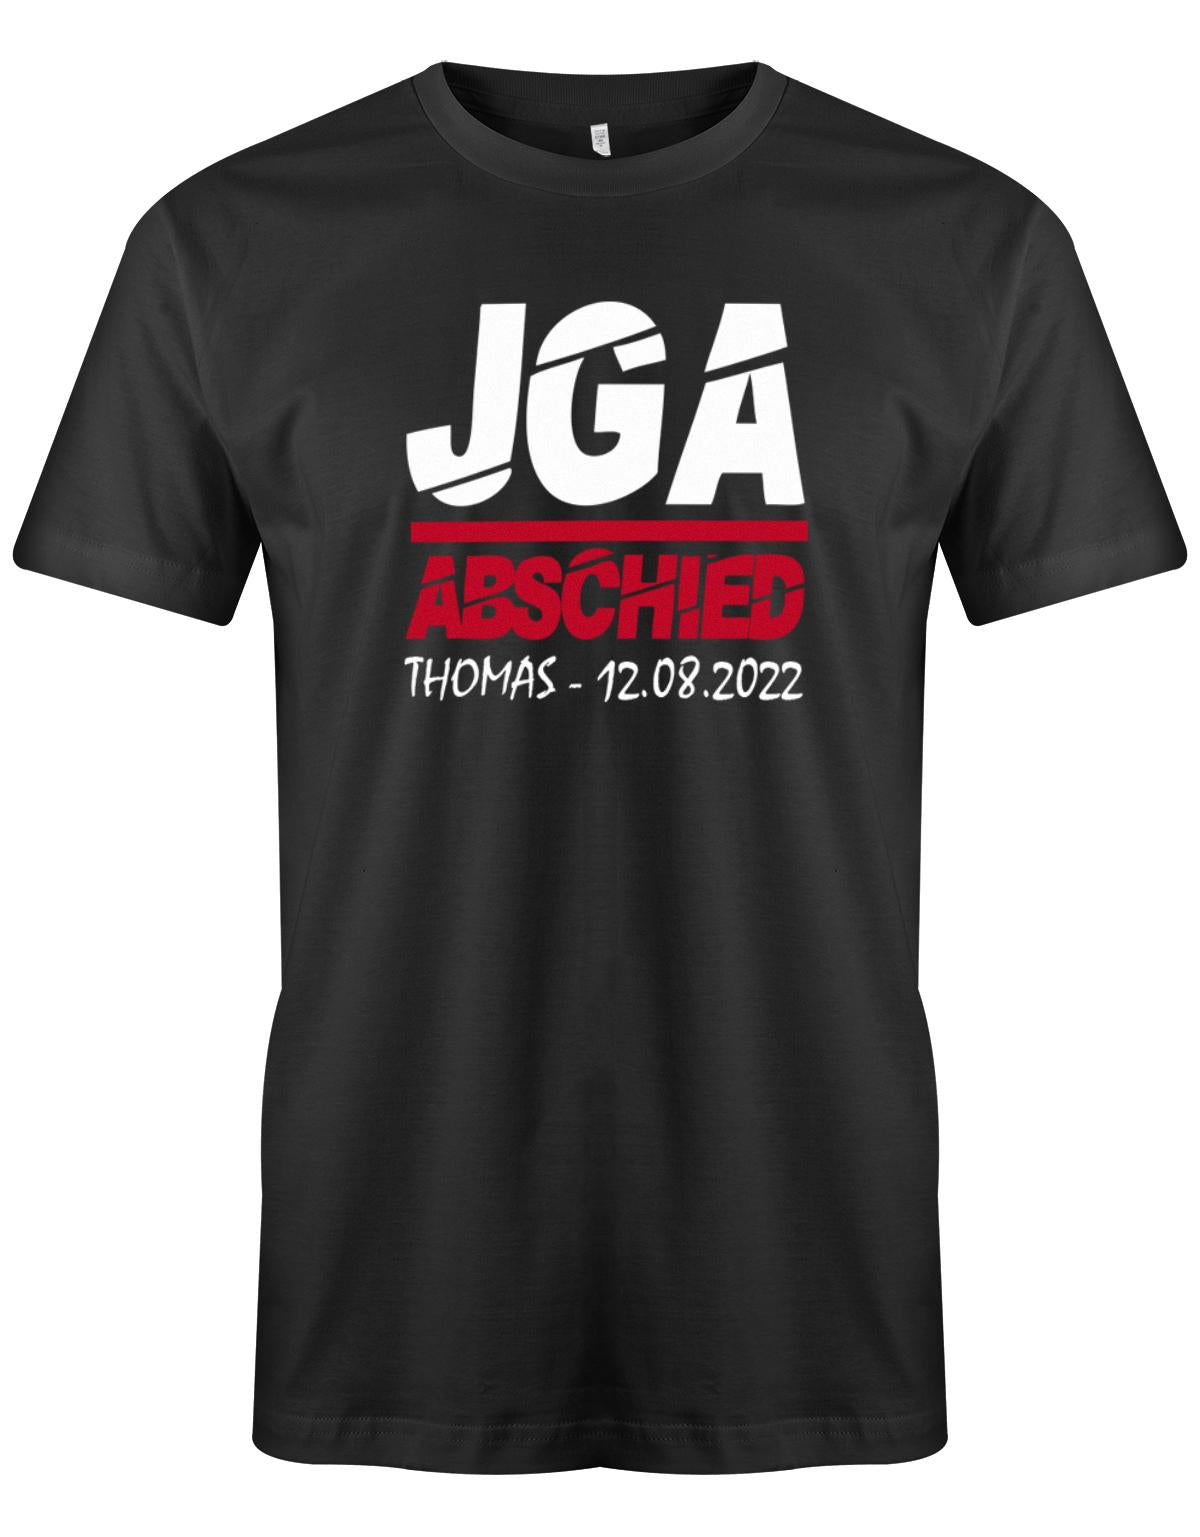 JGA-Abschied-mit-Name-und-Datum-Herren-Shirt-Schwarz